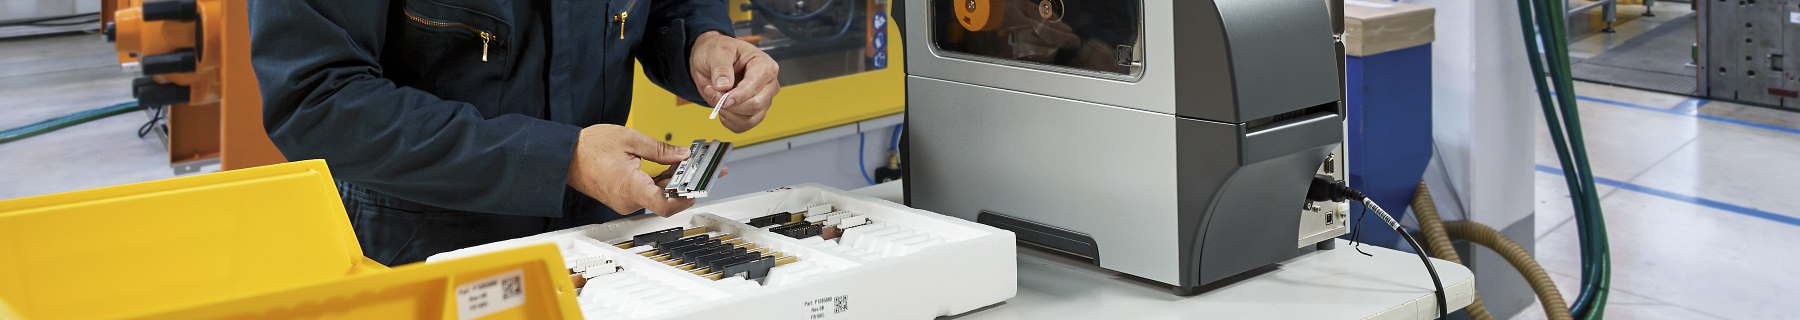 Industriele labelprinter voor hardware fabrikanten